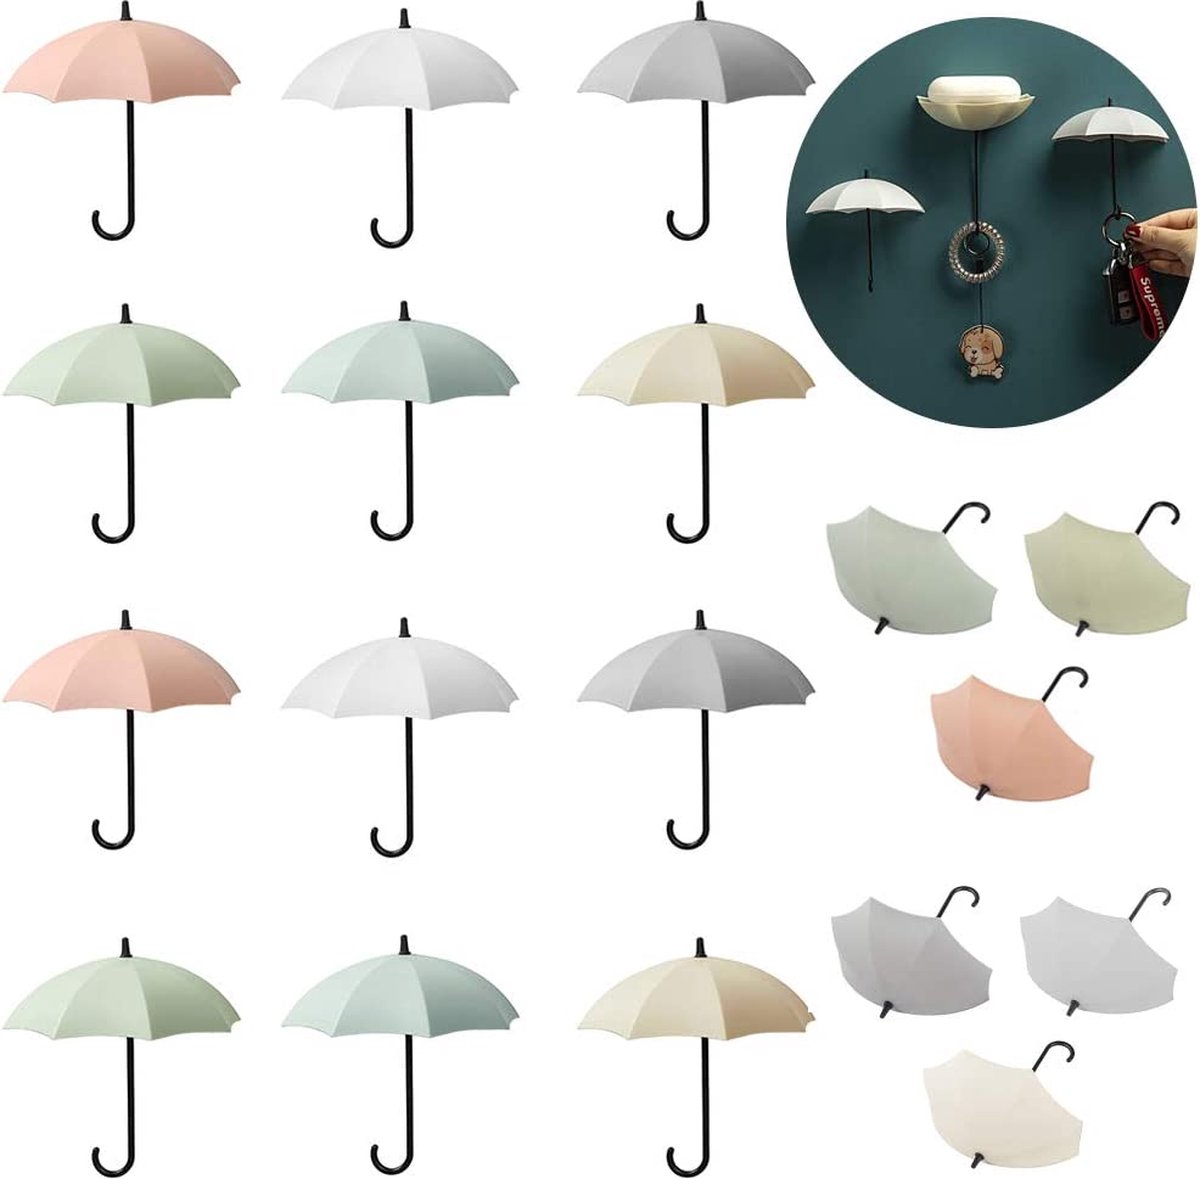 Parapluhaken, 18 stuks, zelfklevende paraplu, wandhaken, sleutelhaken, paraplu, doe-het-zelfdecoratie, haken, voor keuken, badkamer, muur, handdoekhaak, kledinghaak